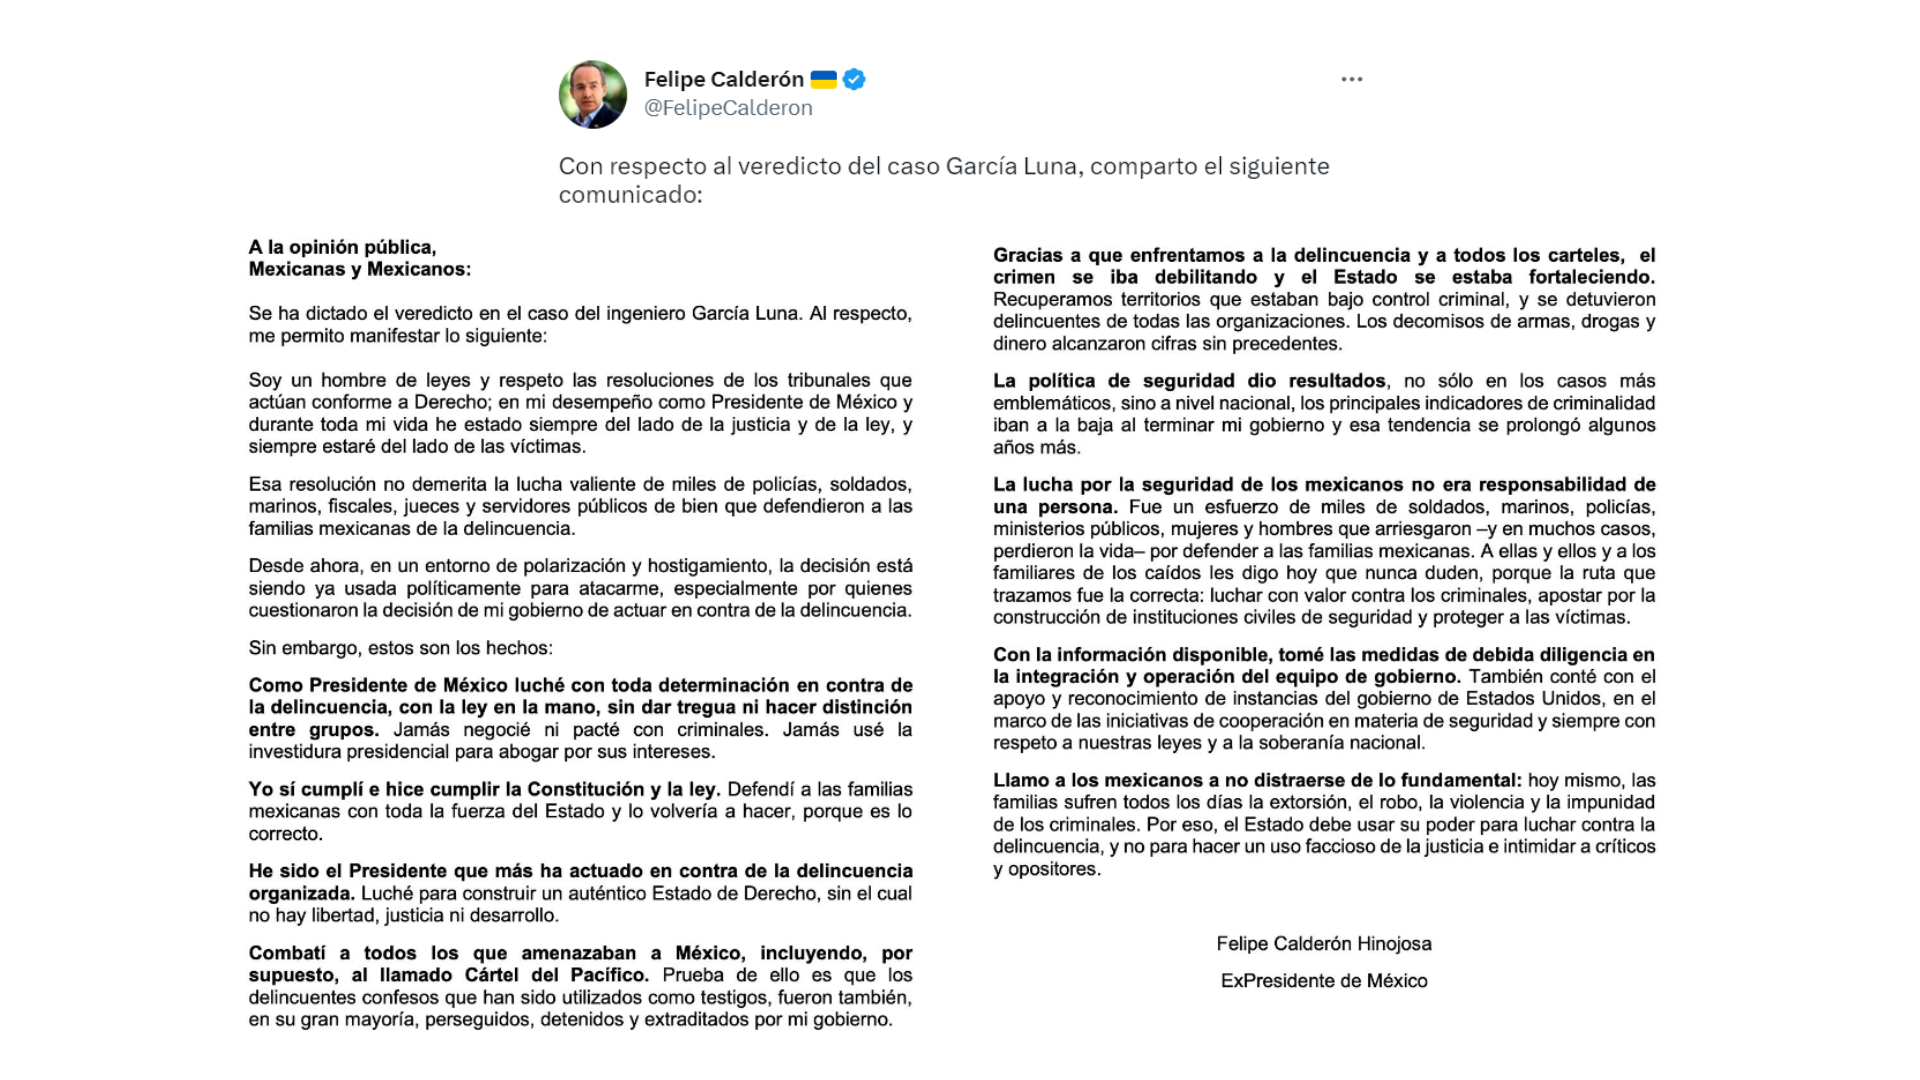 Comunicado oficial de Felipe Calderón respecto al veredicto en contra de Genaro García Luna. FOTO: @FelipeCalderon